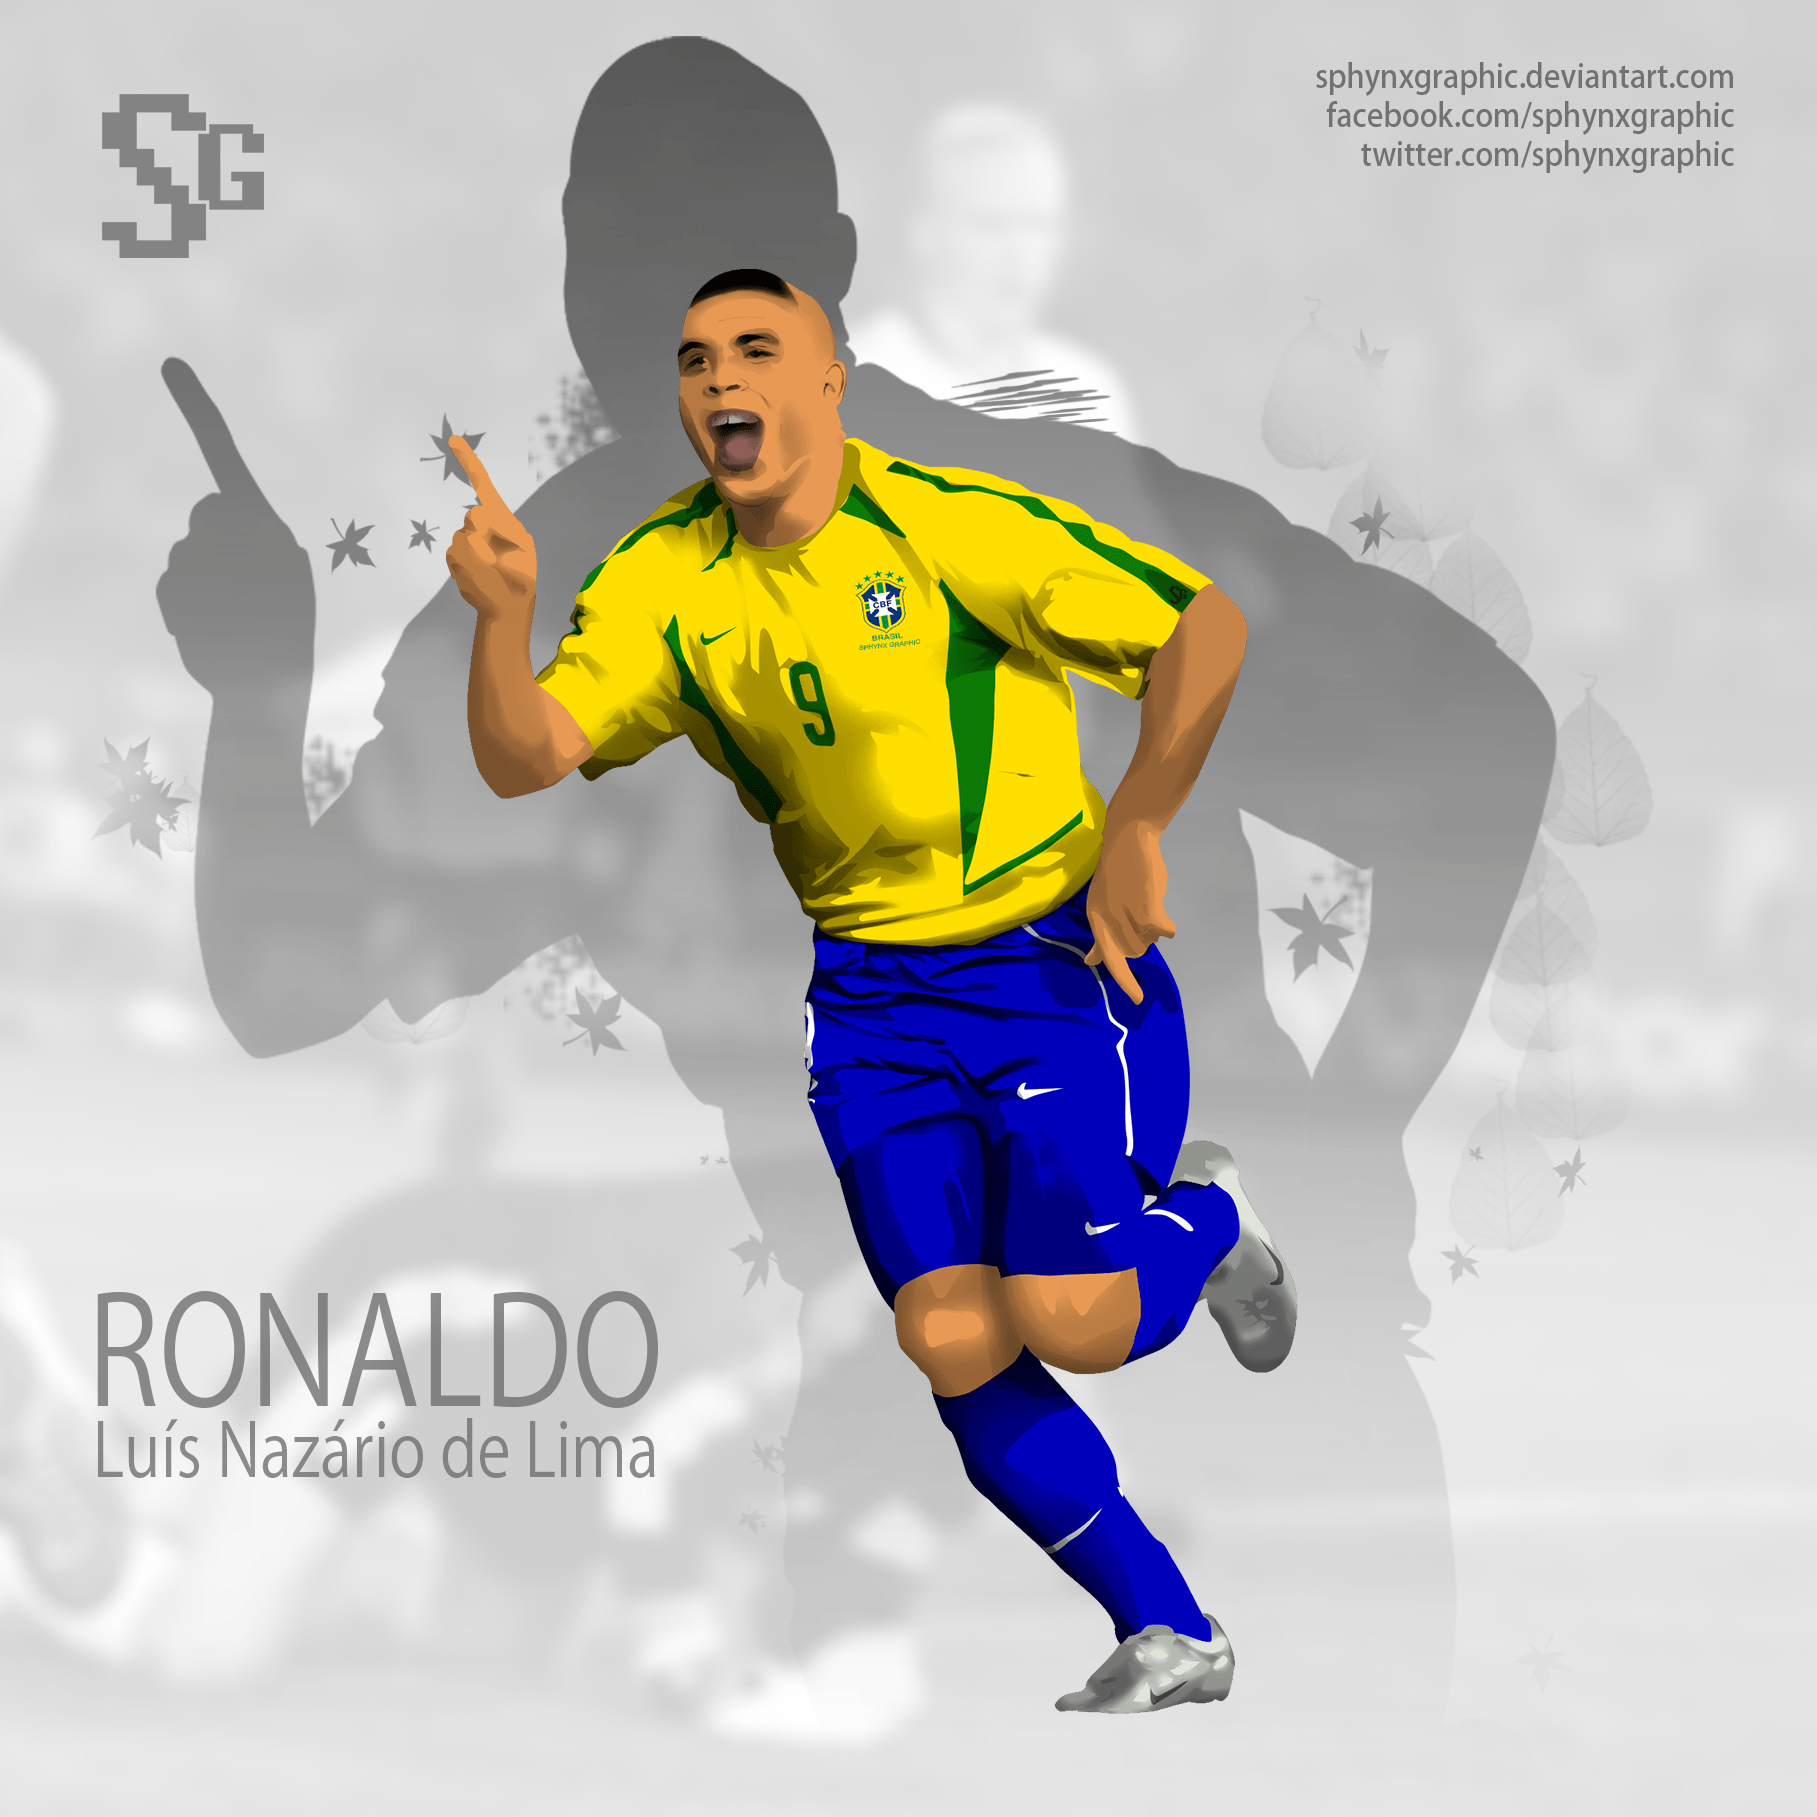 Ronaldo Nazario Wallpapers sẽ làm cho trái tim bạn đập nhanh hơn khi được ngắm nhìn hình ảnh của cầu thủ vĩ đại này. Hãy chiêm ngưỡng những khoảnh khắc đẹp nhất trong sự nghiệp của Ronaldo và cảm nhận đam mê bất tận dành cho bóng đá.